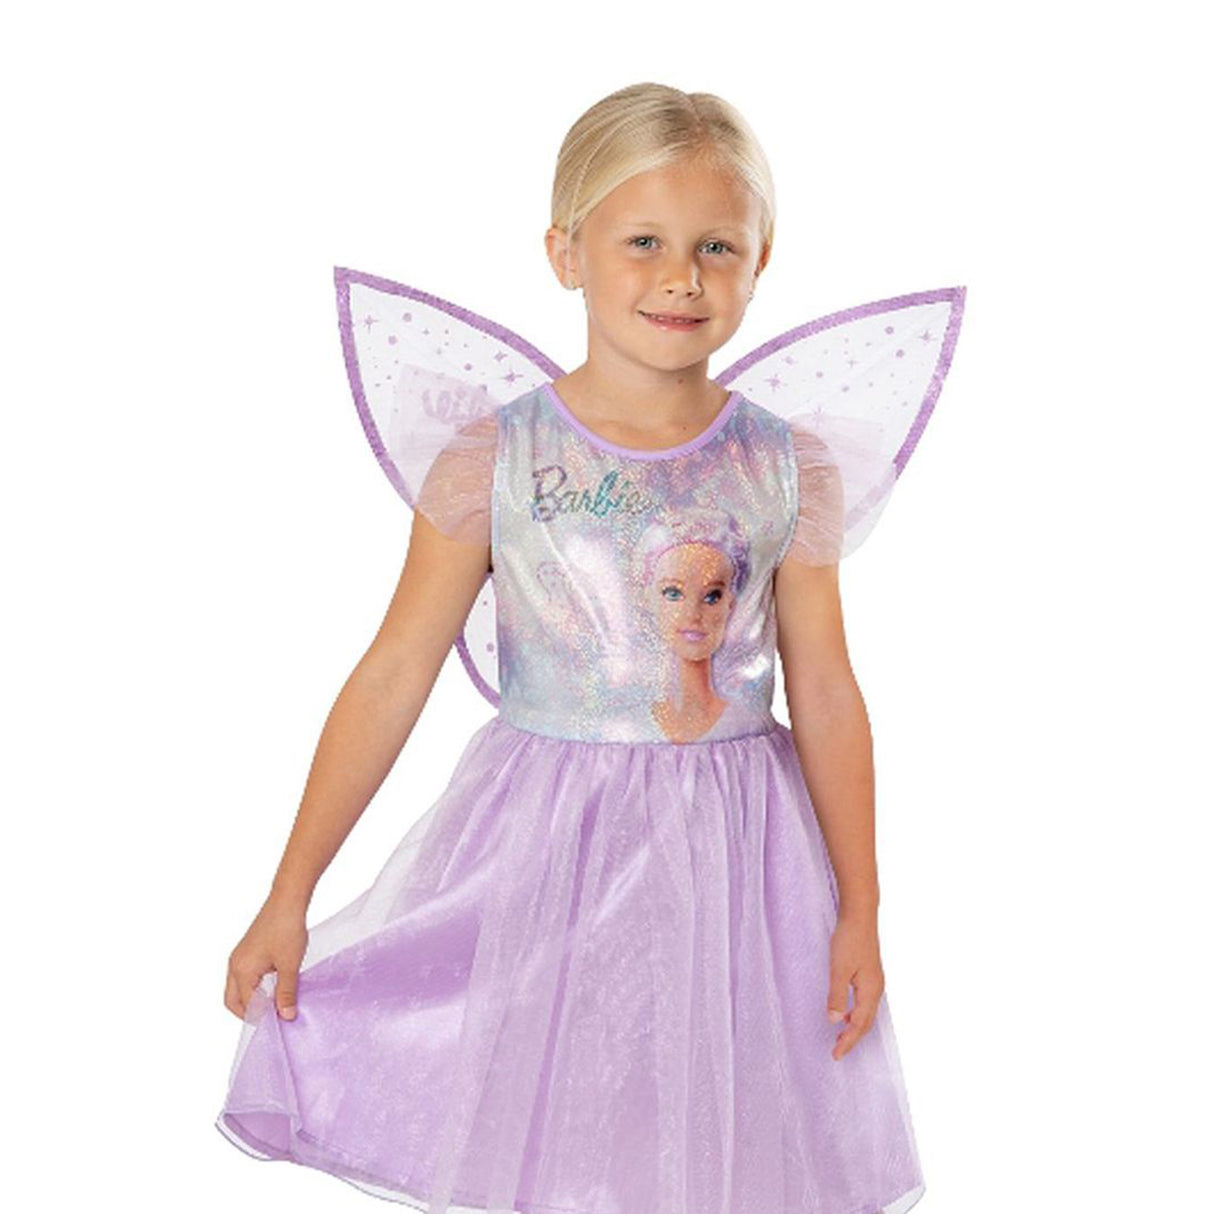 Rubies Barbie Fairy Costume Kids, Pink (3-5 years)